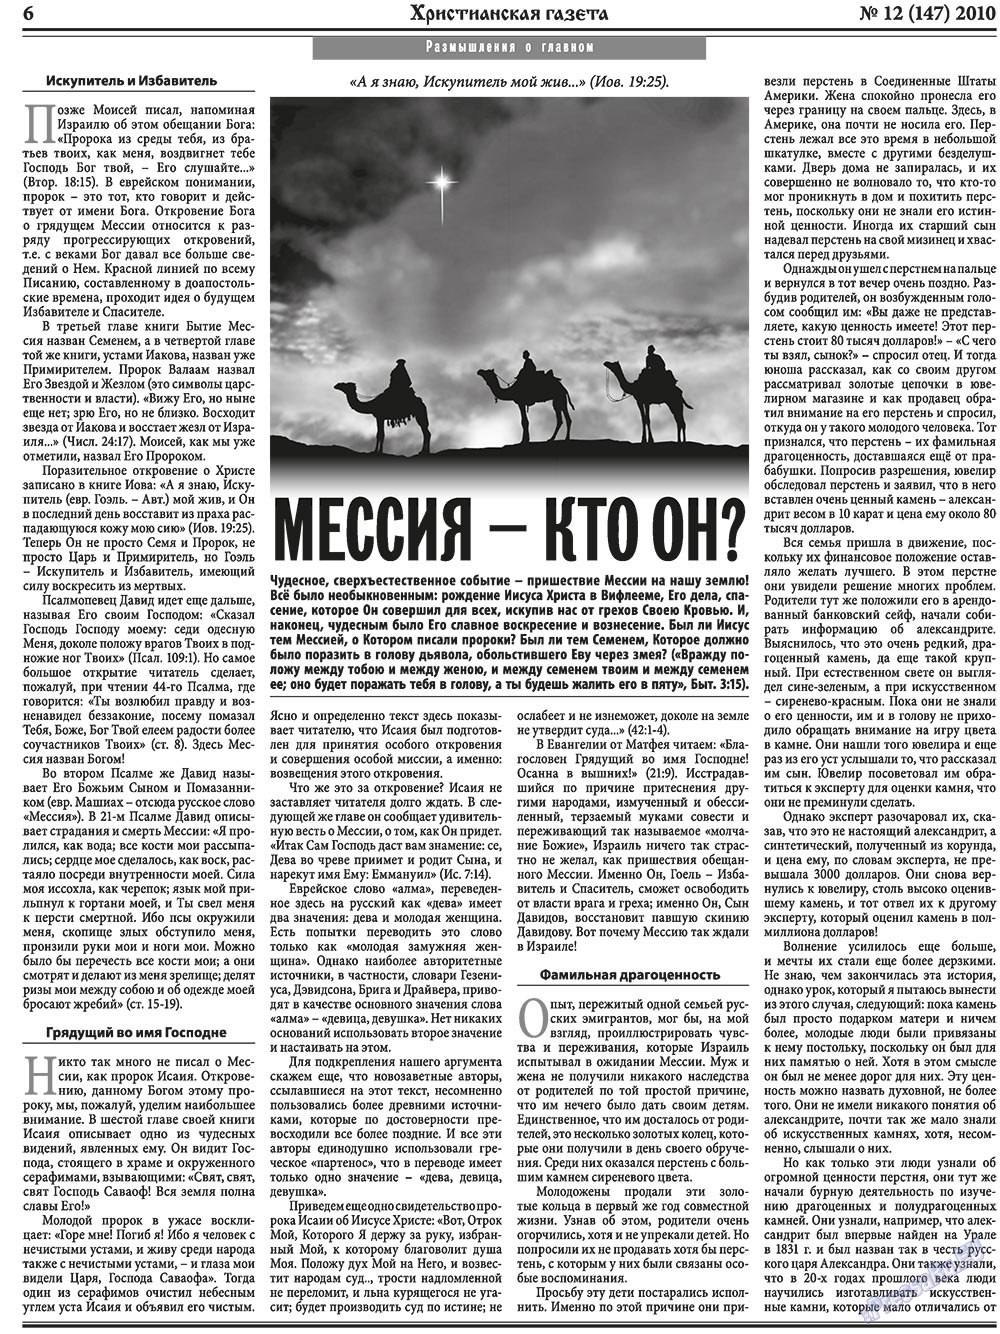 Христианская газета, газета. 2010 №12 стр.6